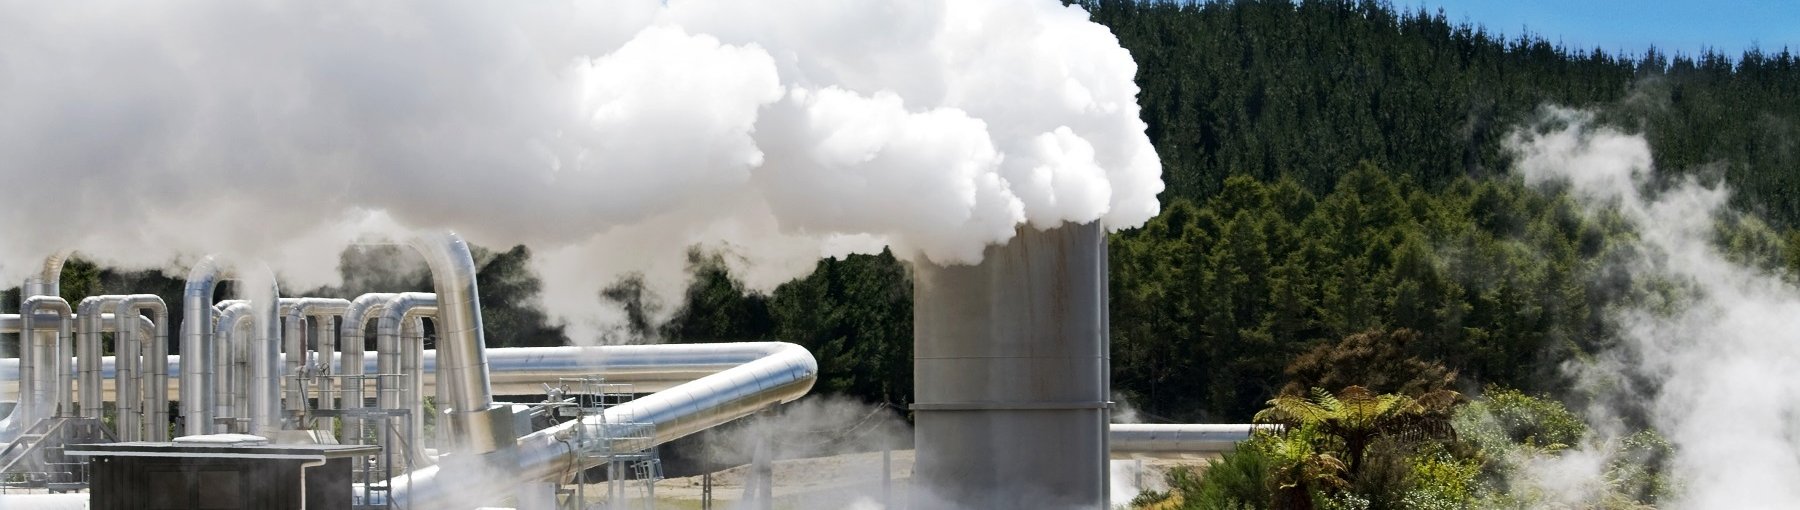 Podpisano umowę na dofinansowanie odwiertu geotermalnego w Turku. Fot. N.Minton/Shutterstock